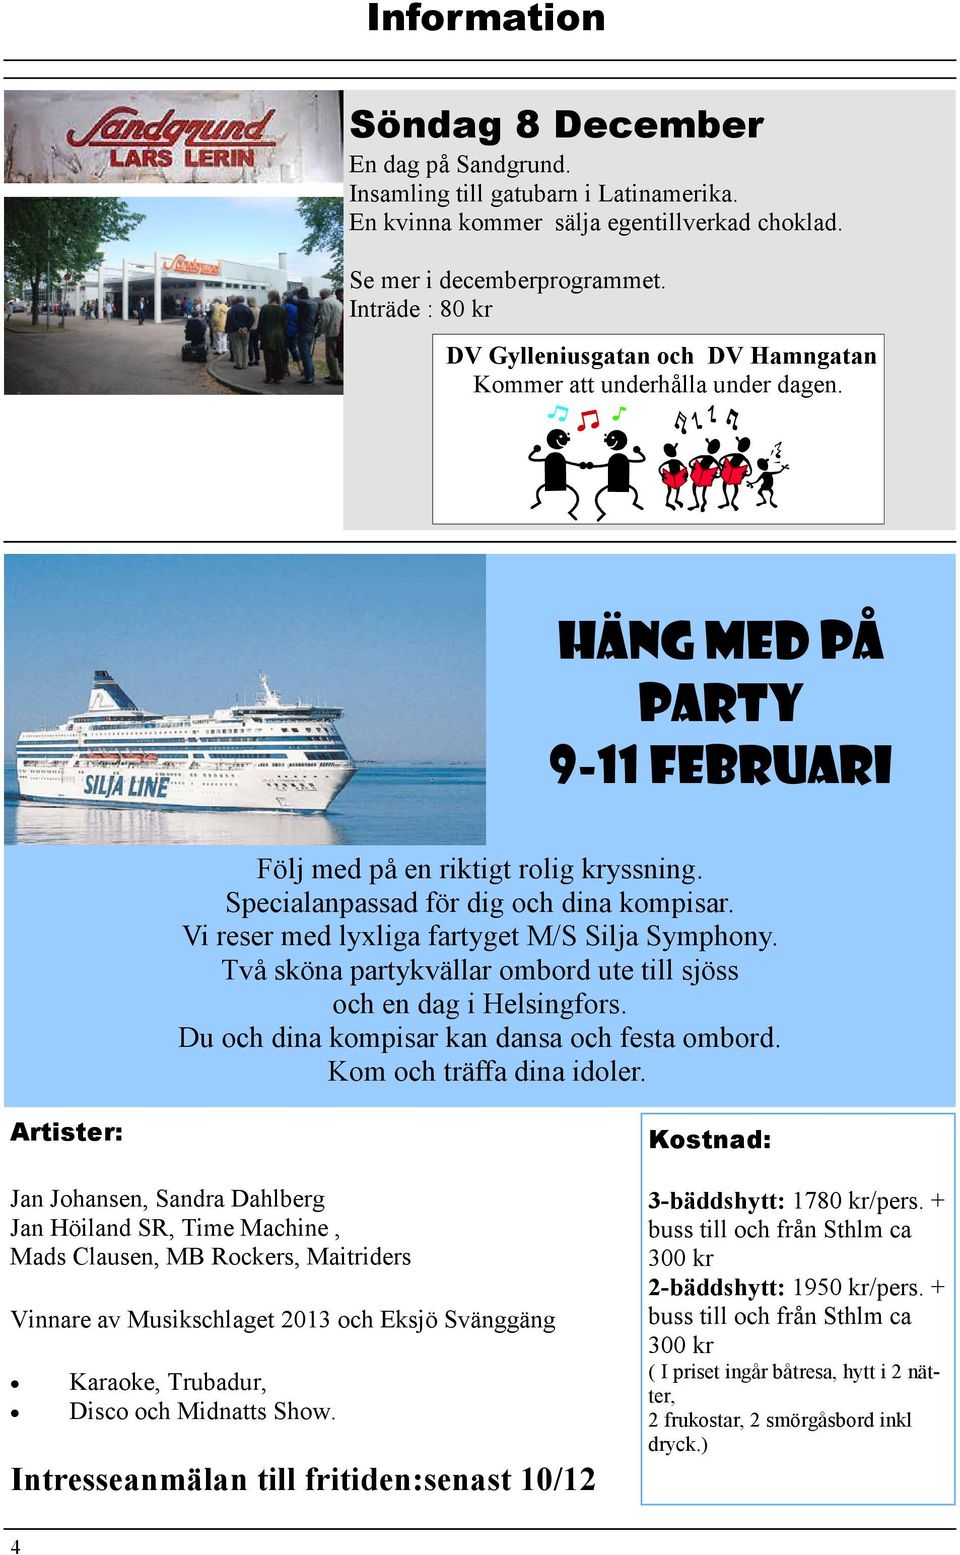 Vi reser med lyxliga fartyget M/S Silja Symphony. Två sköna partykvällar ombord ute till sjöss och en dag i Helsingfors. Du och dina kompisar kan dansa och festa ombord. Kom och träffa dina idoler.